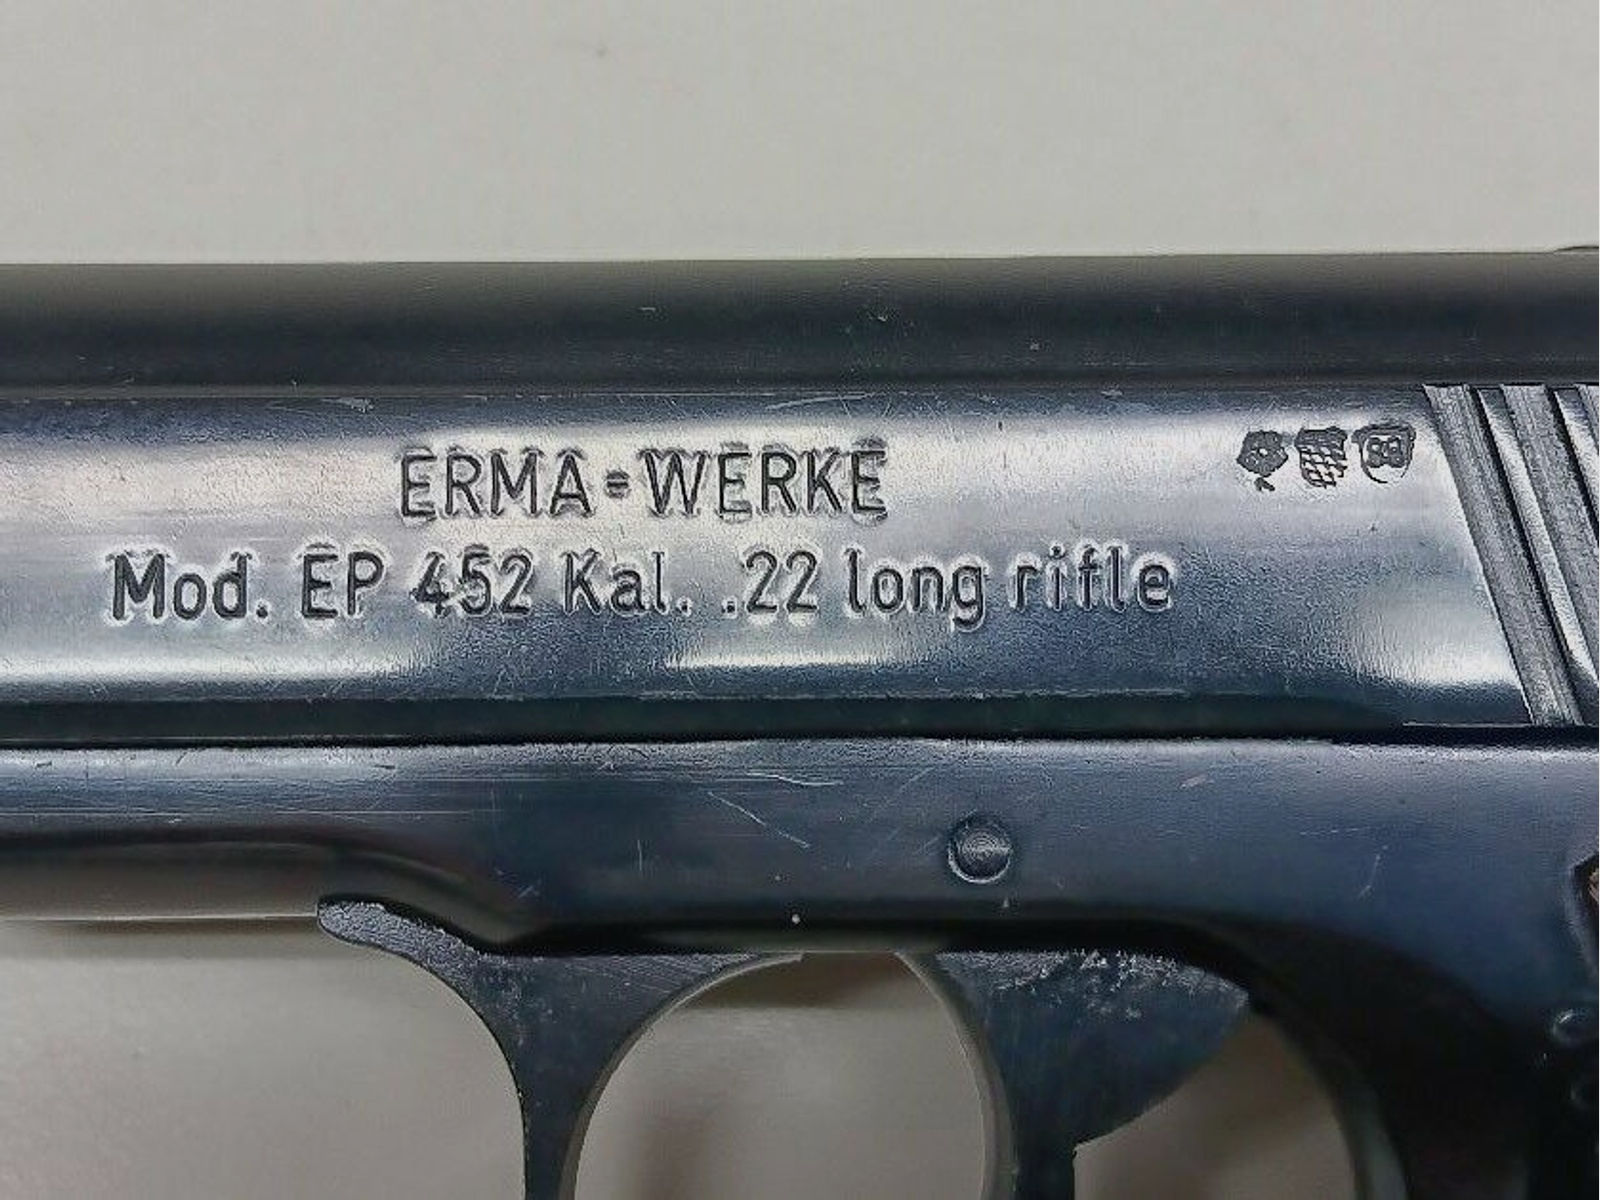 Erma - Werke	 Mod. EP 452